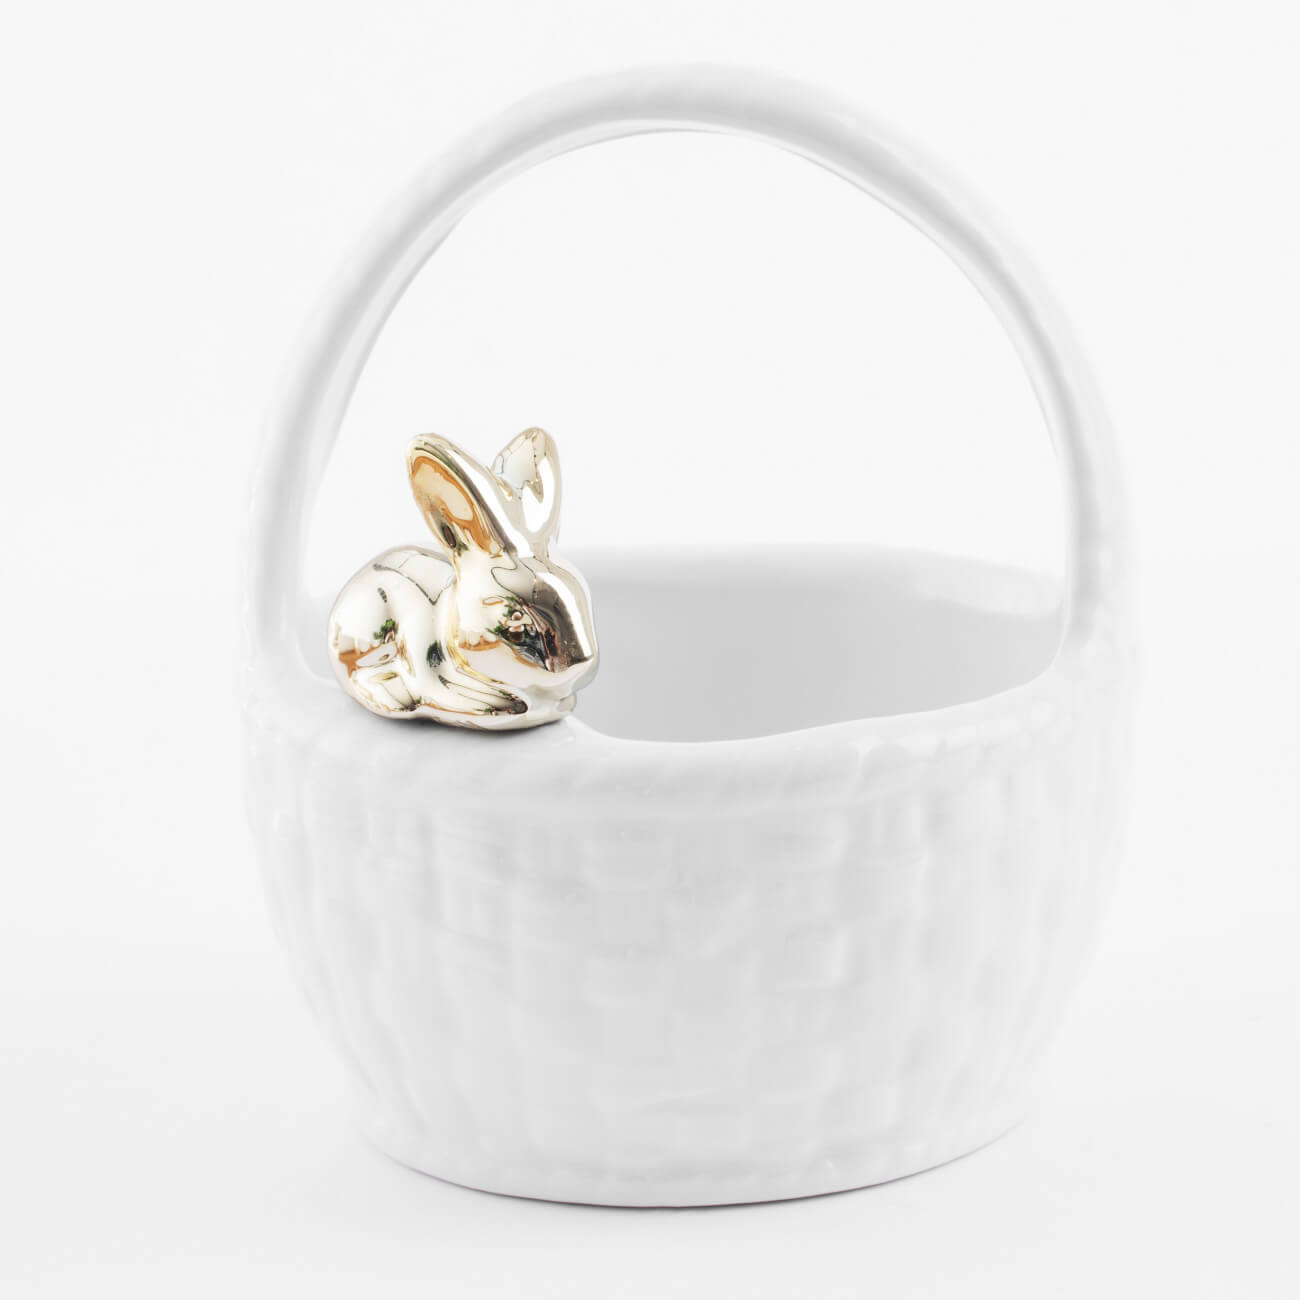 Конфетница, 12х14 см, с ручкой, керамика, белая, Кролик на корзине, Easter gold щётка paul masquin funny с ручкой